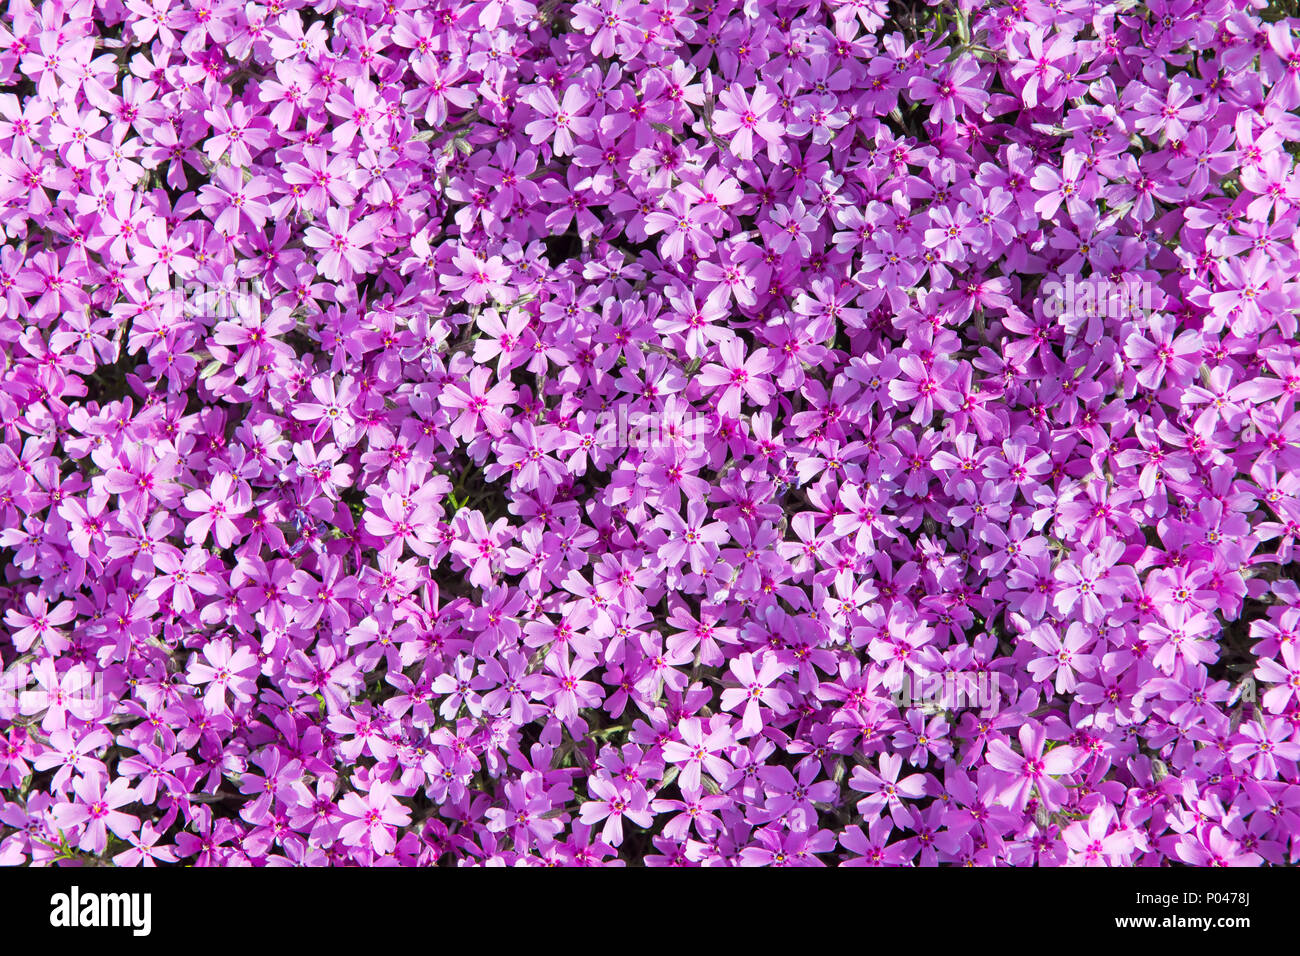 Phlox subulata (als kriechenden Phlox phlox bekannt, Moos, Moos rosa, oder Berg phlox) Blumen Hintergrund. Viele kleine lila Blumen für Hintergrund, top v Stockfoto